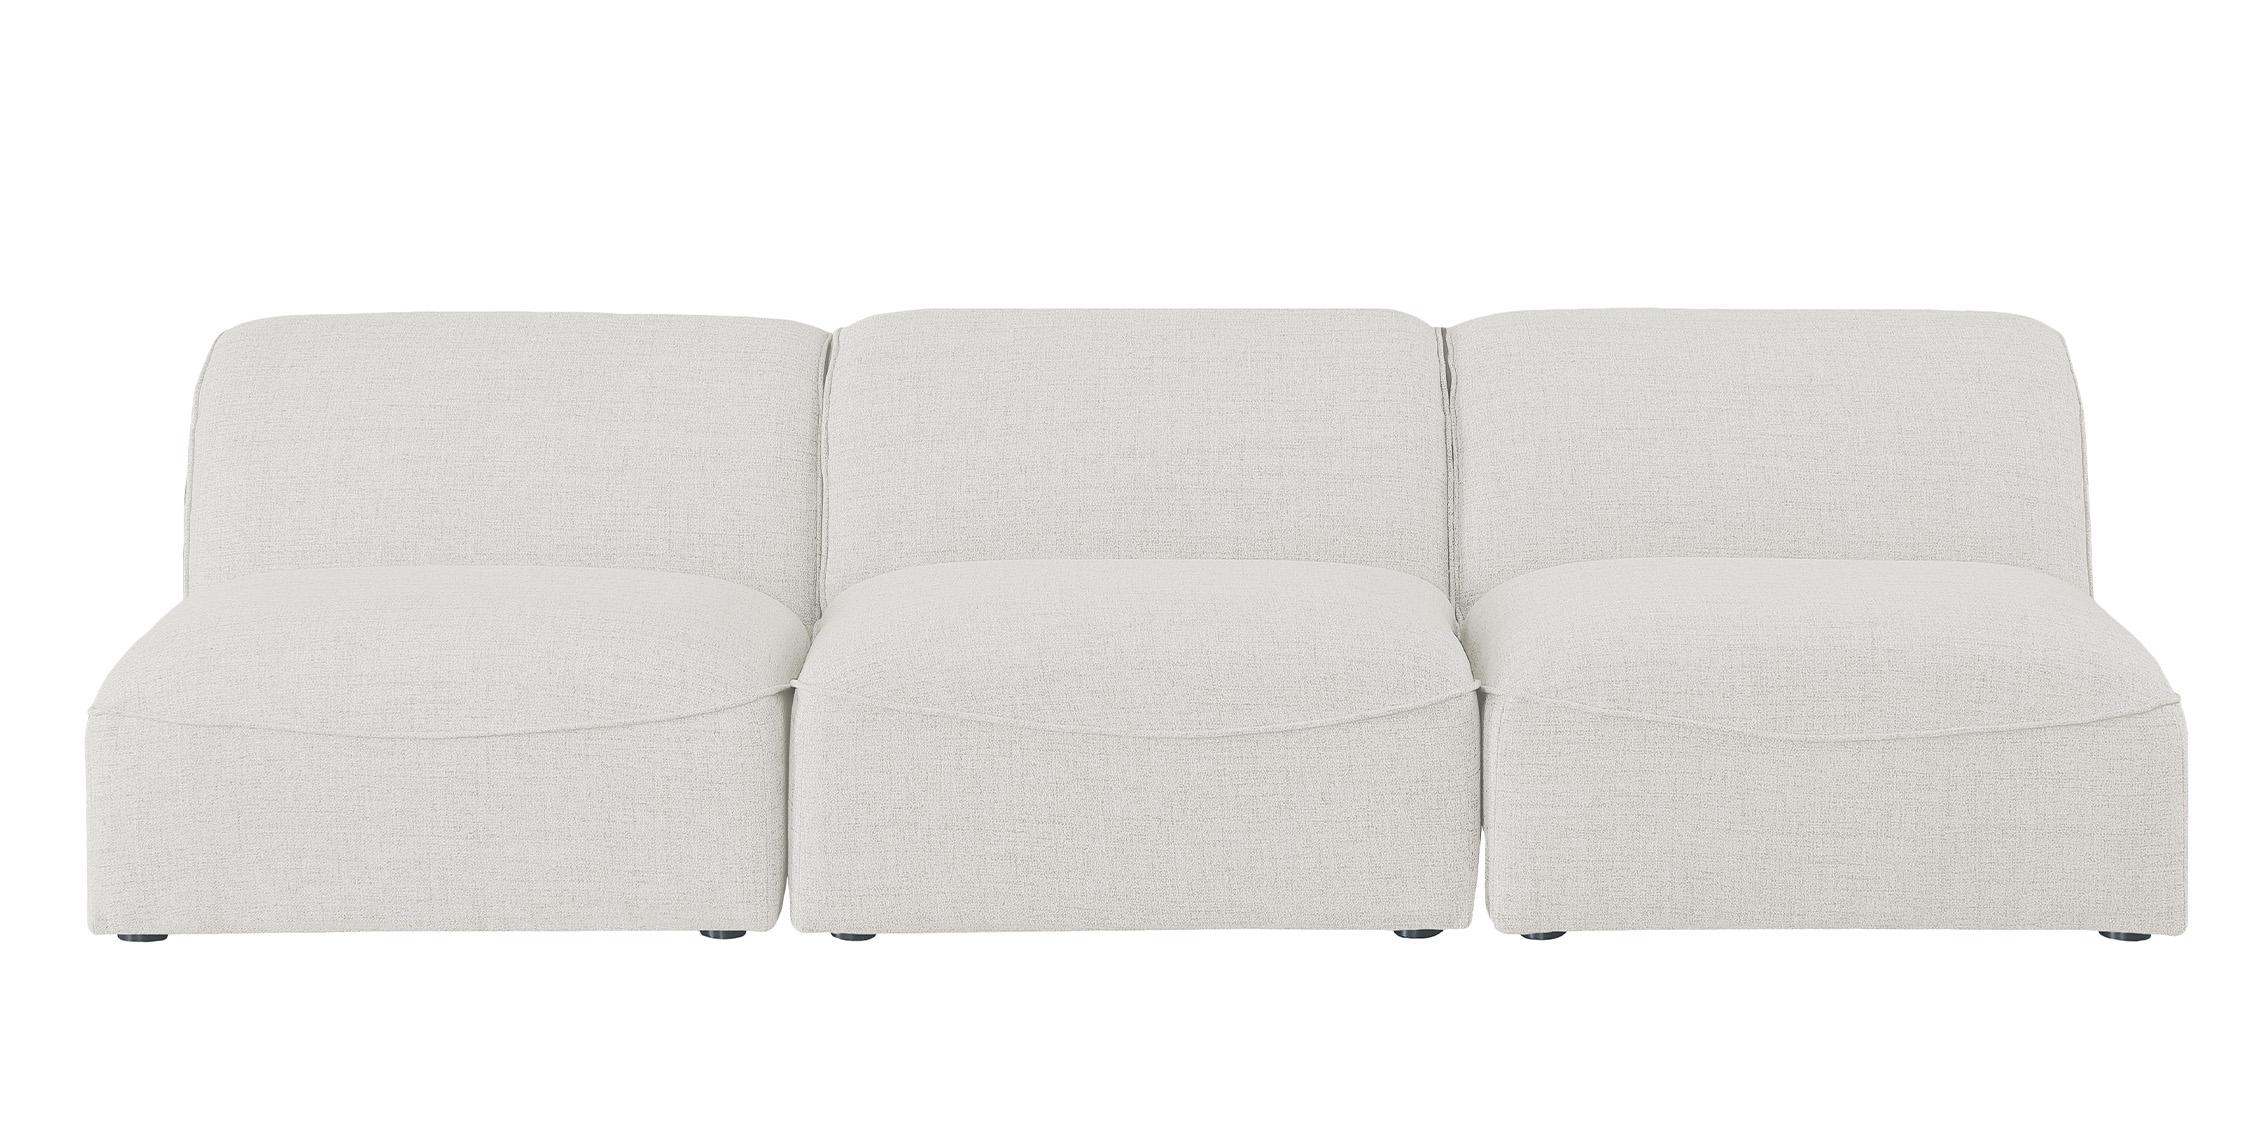 

    
Meridian Furniture MIRAMAR 683Cream-S99 Modular Sofa Cream 683Cream-S99
